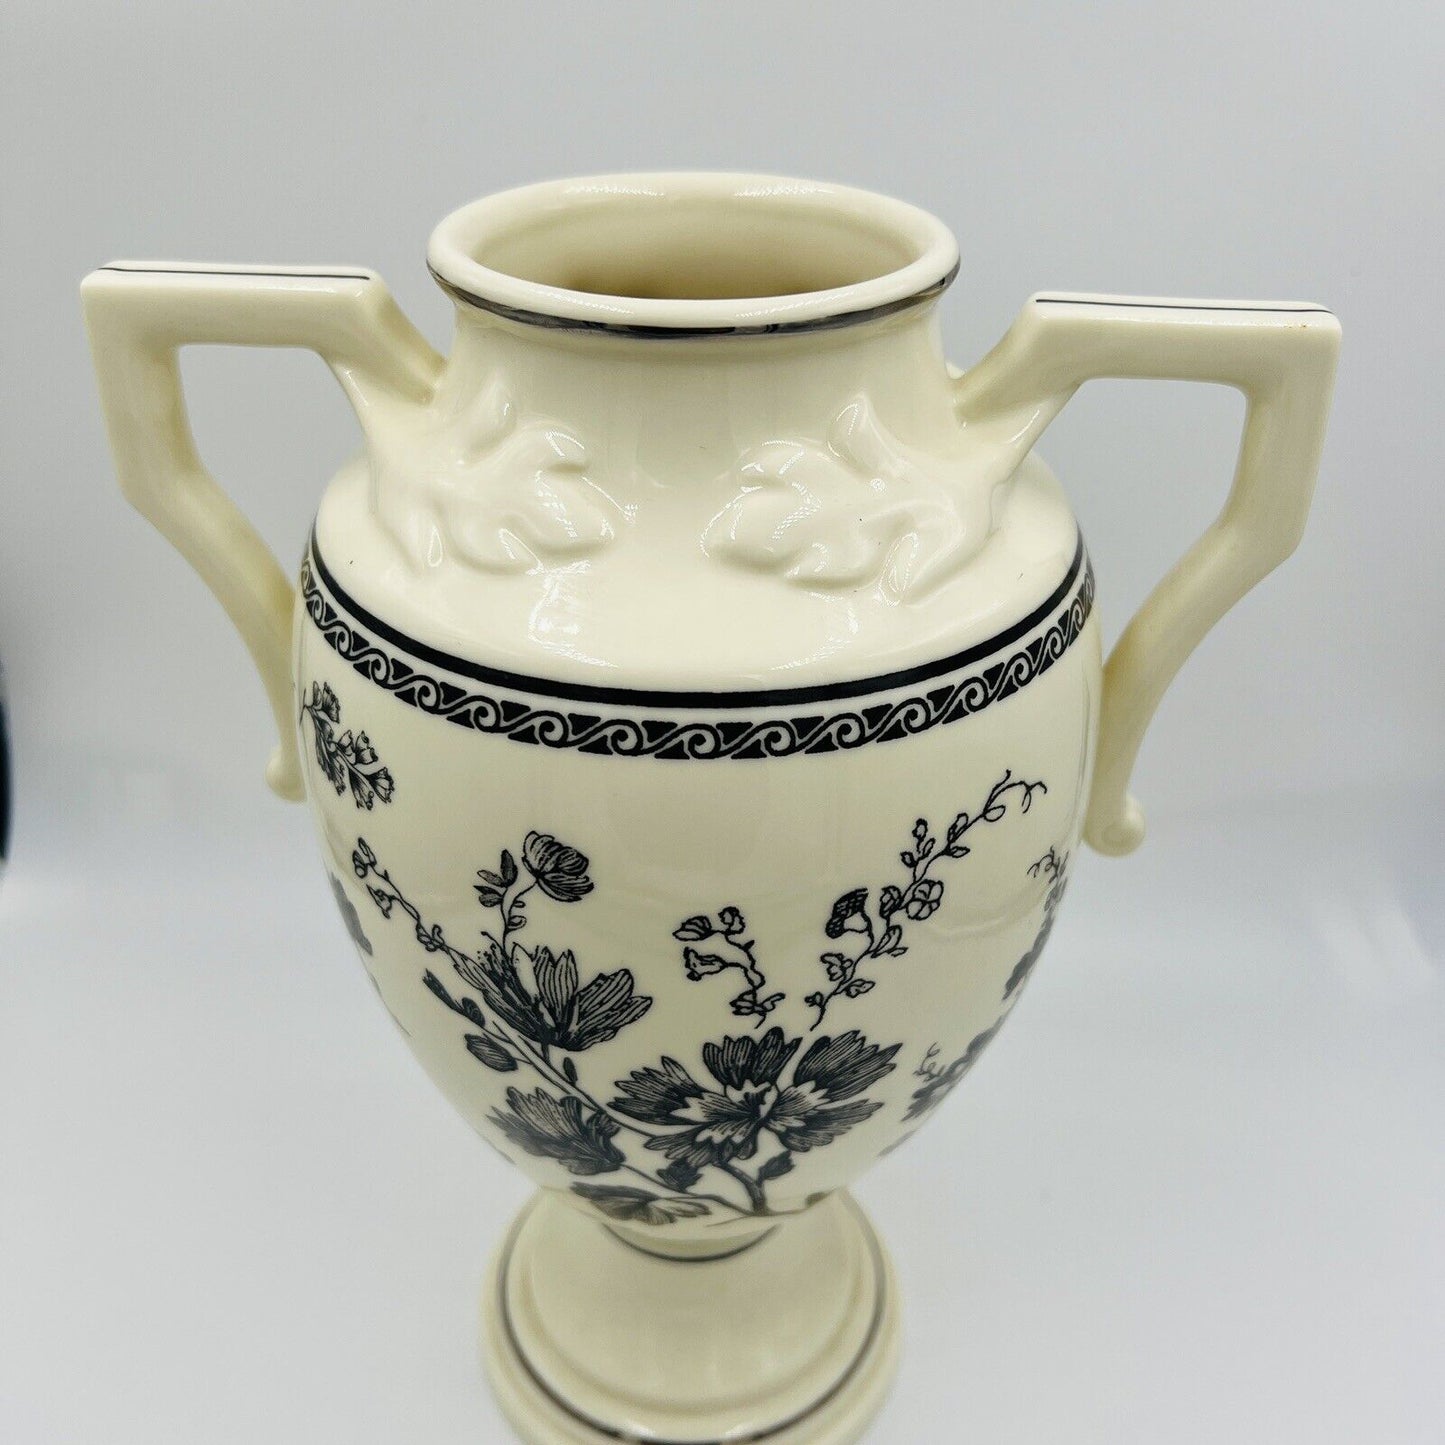 Lenox Urn Vase Porcelain 2002 Floral Elegance Handles Large Home Decor 9in